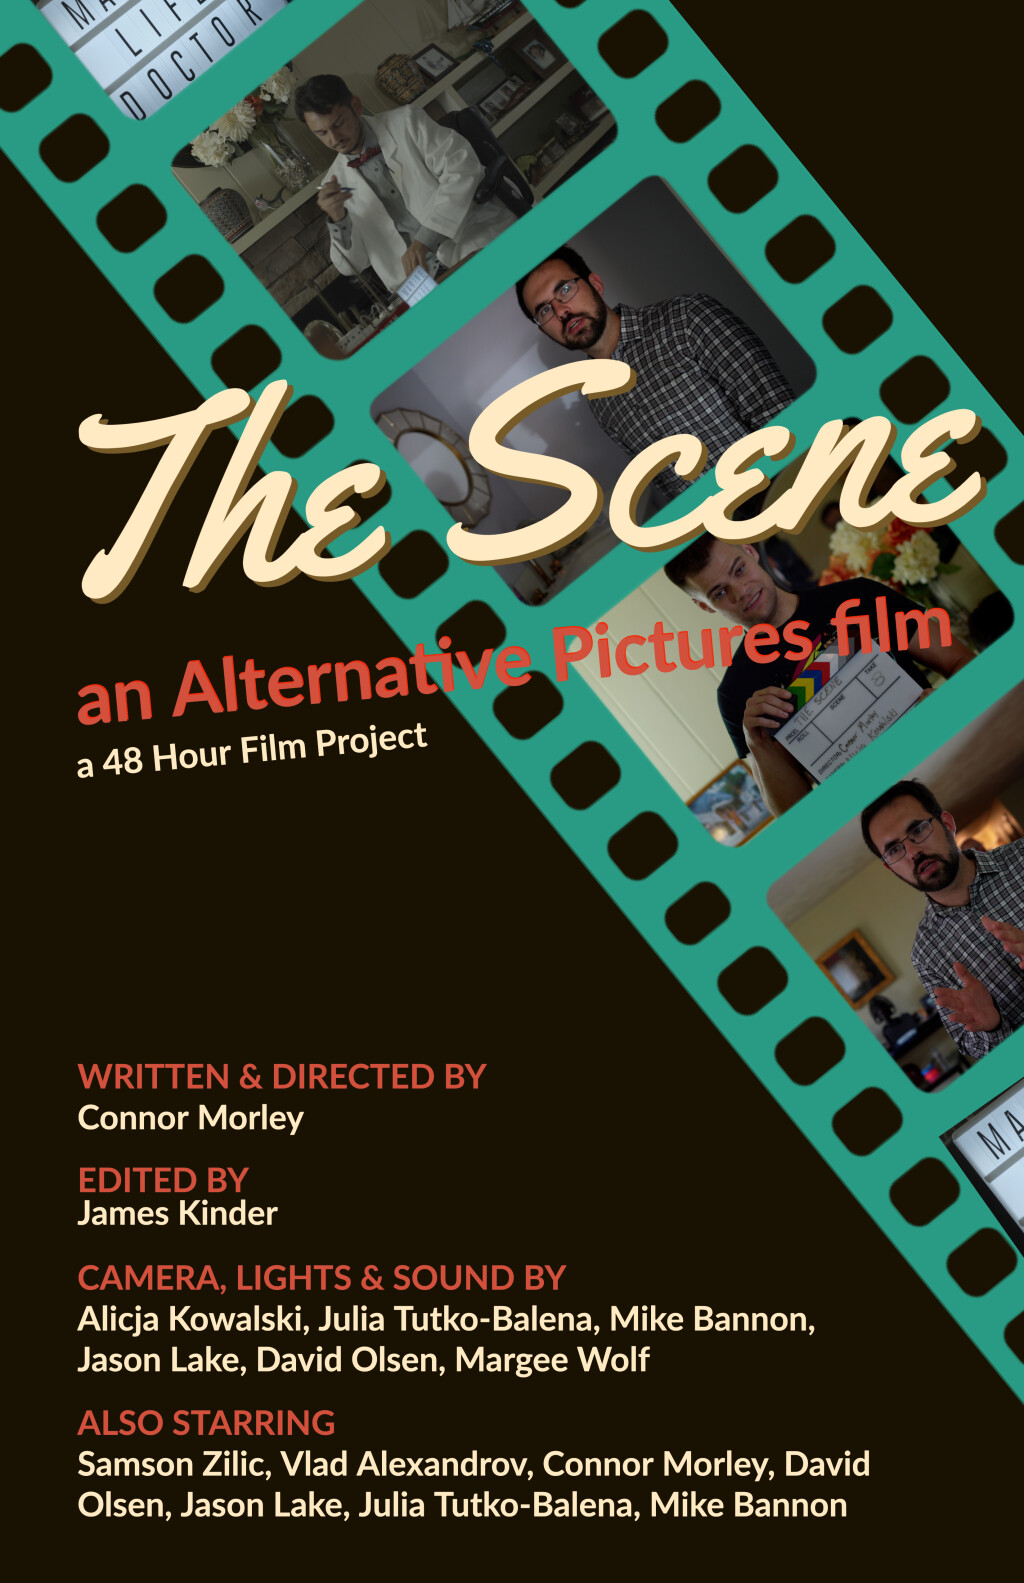 Filmposter for The Scene